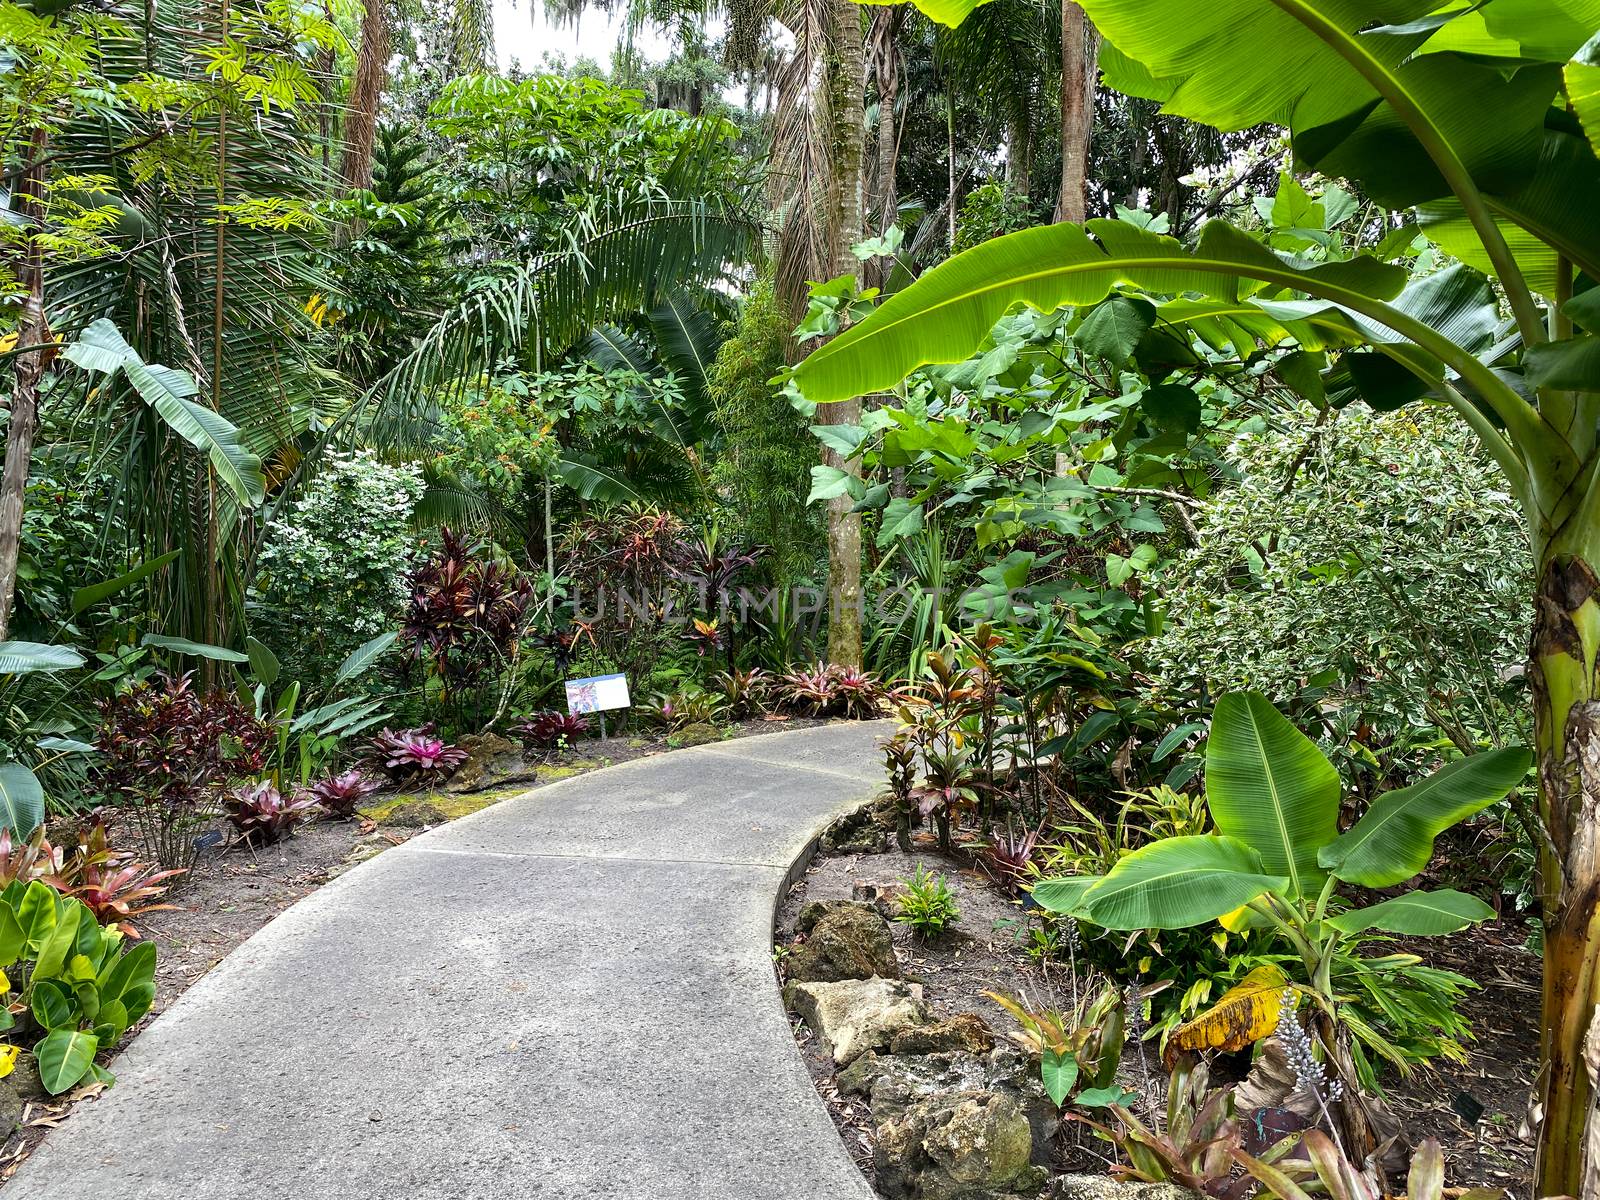 The sidewalk through a botanical garden. by Jshanebutt